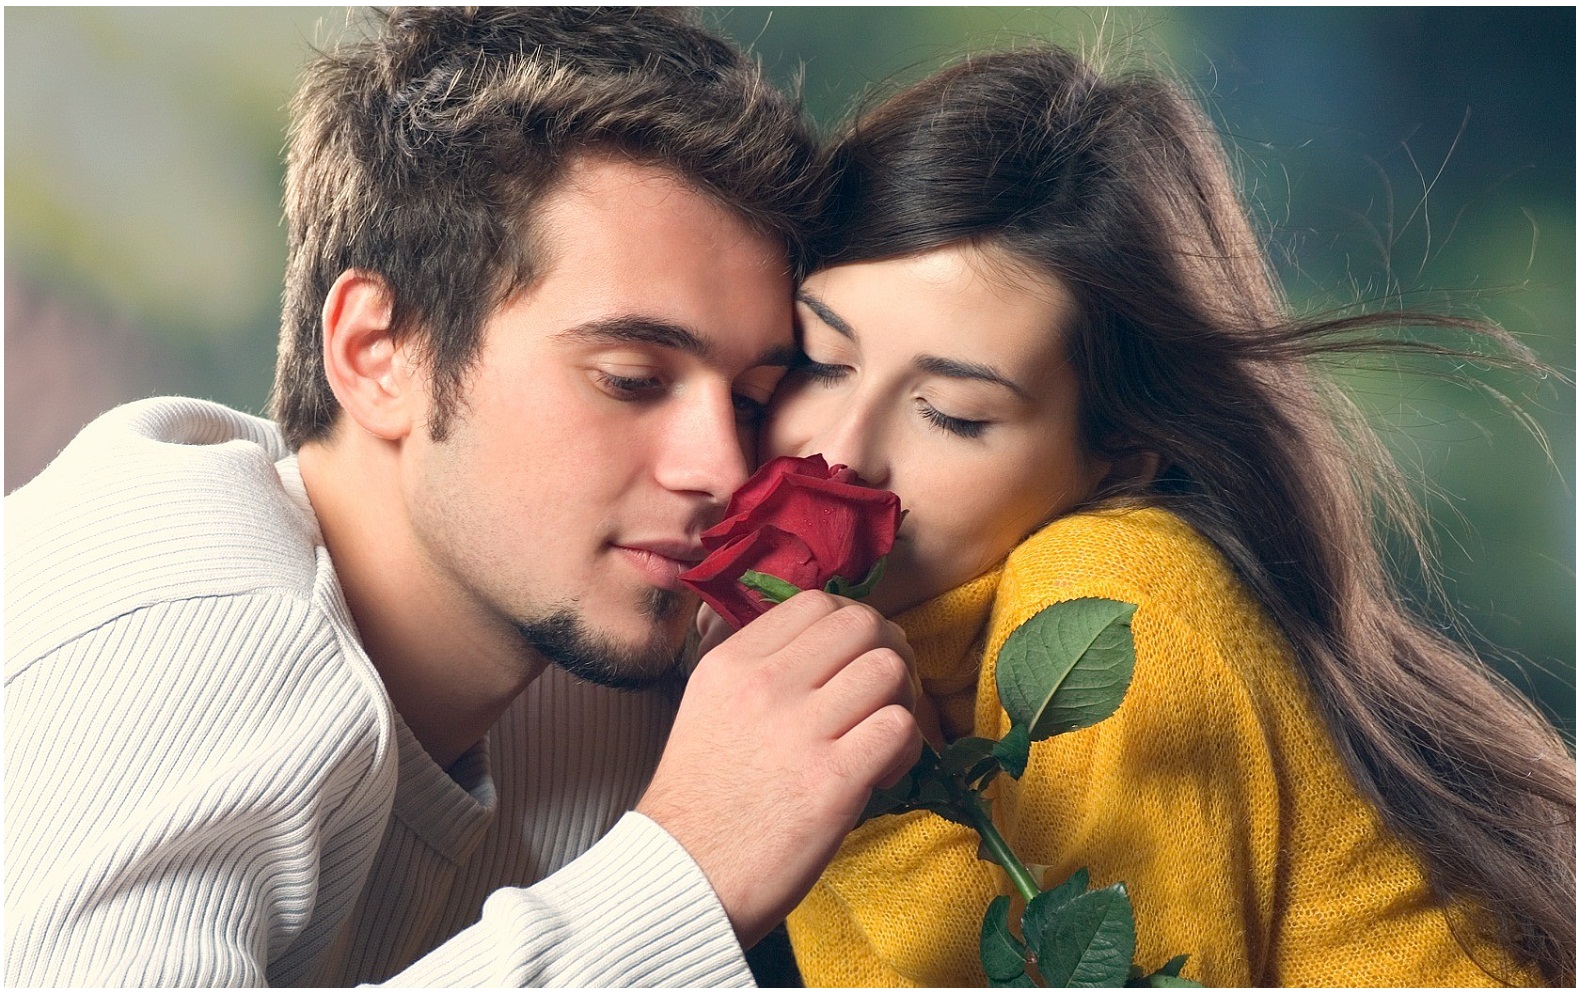 صور رومنسيه نار , اروع صور الحب الرومانسية - معنى الحب